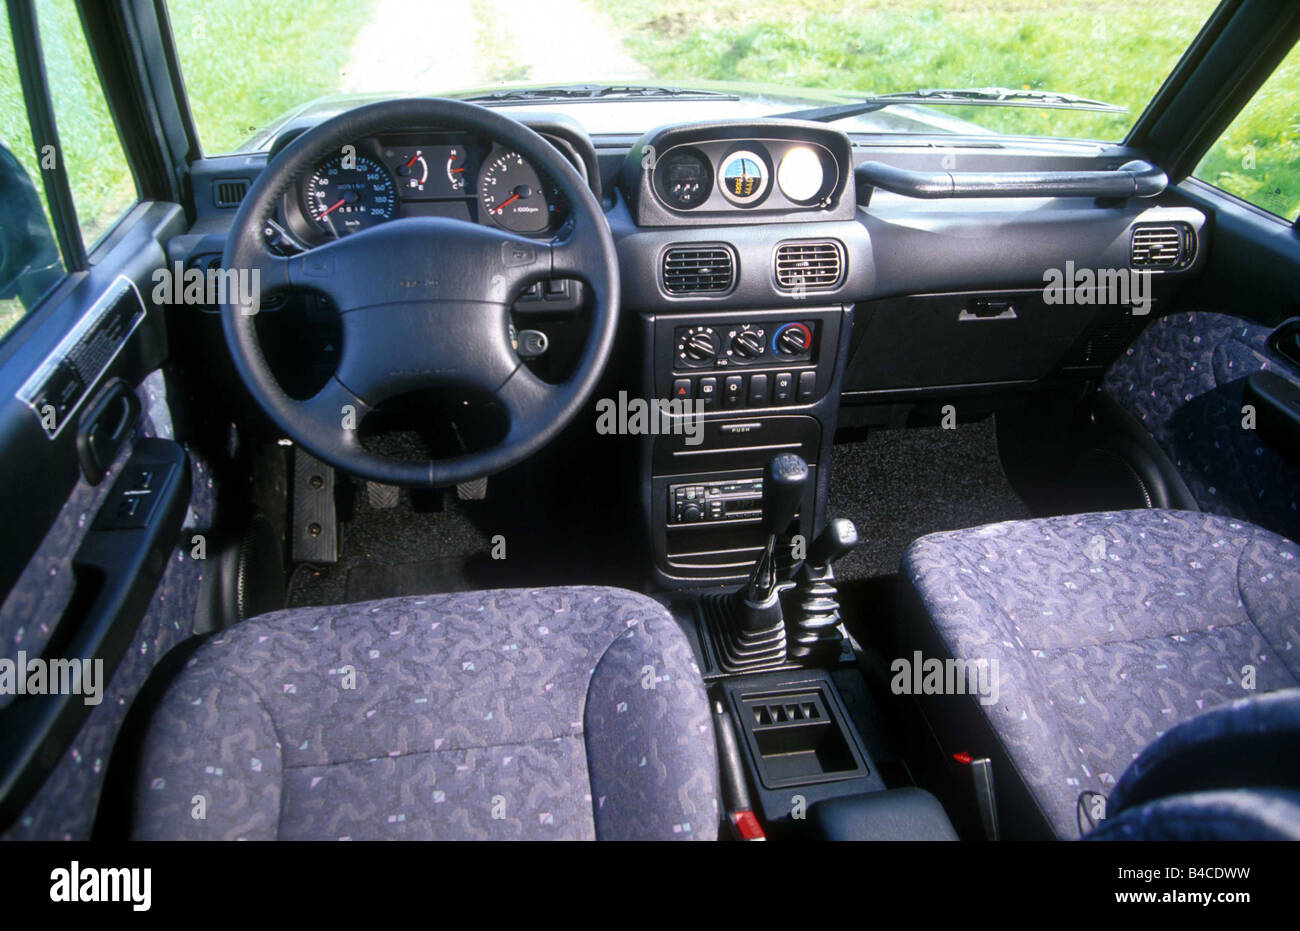 Auto, Mitsubishi Galloper, cross country il veicolo e il modello anno 1998-, nero, vista interna, vista interna, pozzetto, tecnica/acces Foto Stock